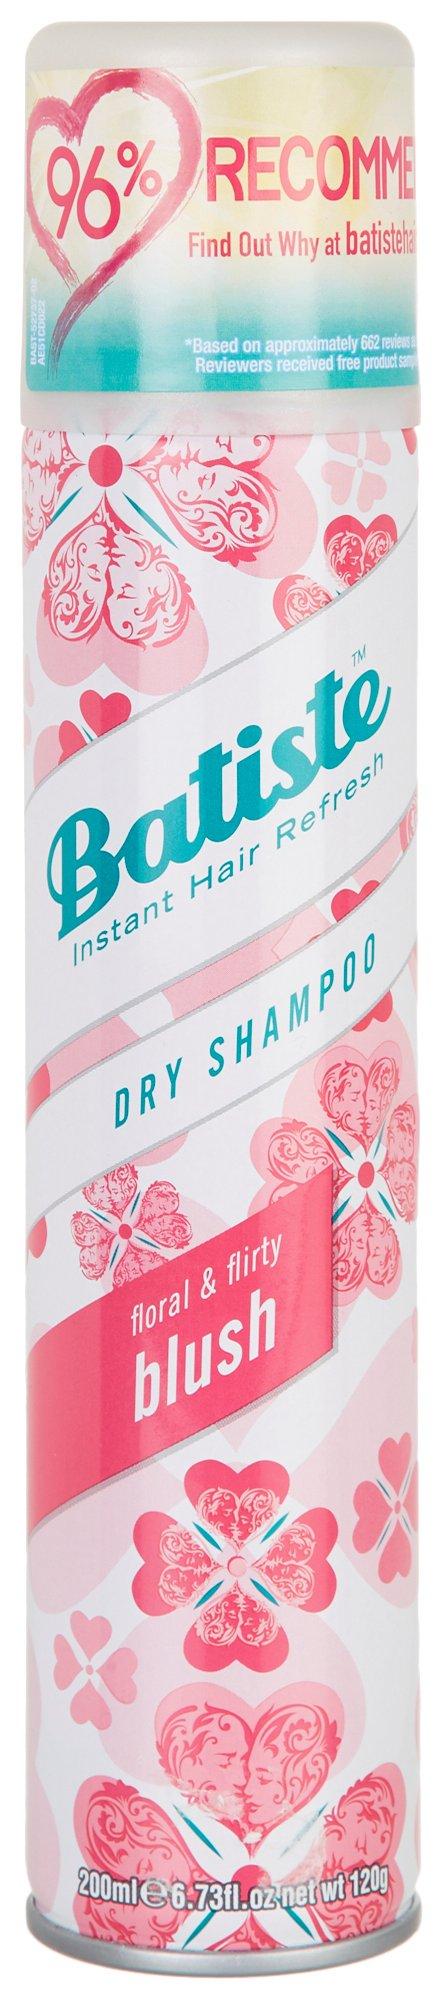 Floral Flirty Blush Dry Shampoo 6.7 fl oz